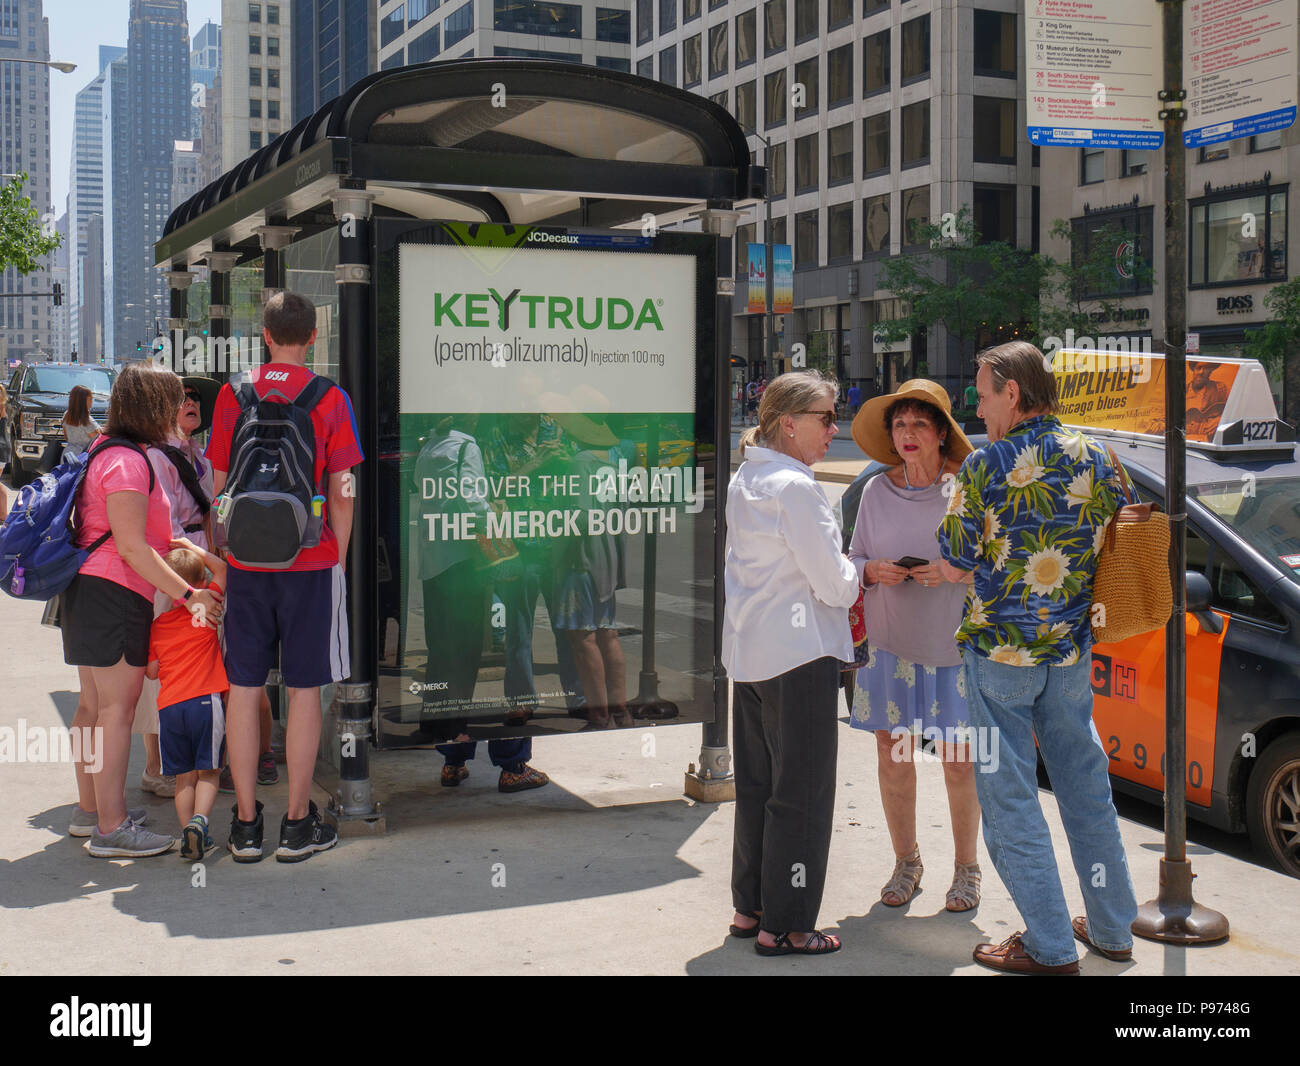 Bushaltestelle mit Werbung für Keytruda, einem monoklonalen Antikörper gegen Krebs Medikament. Stockfoto